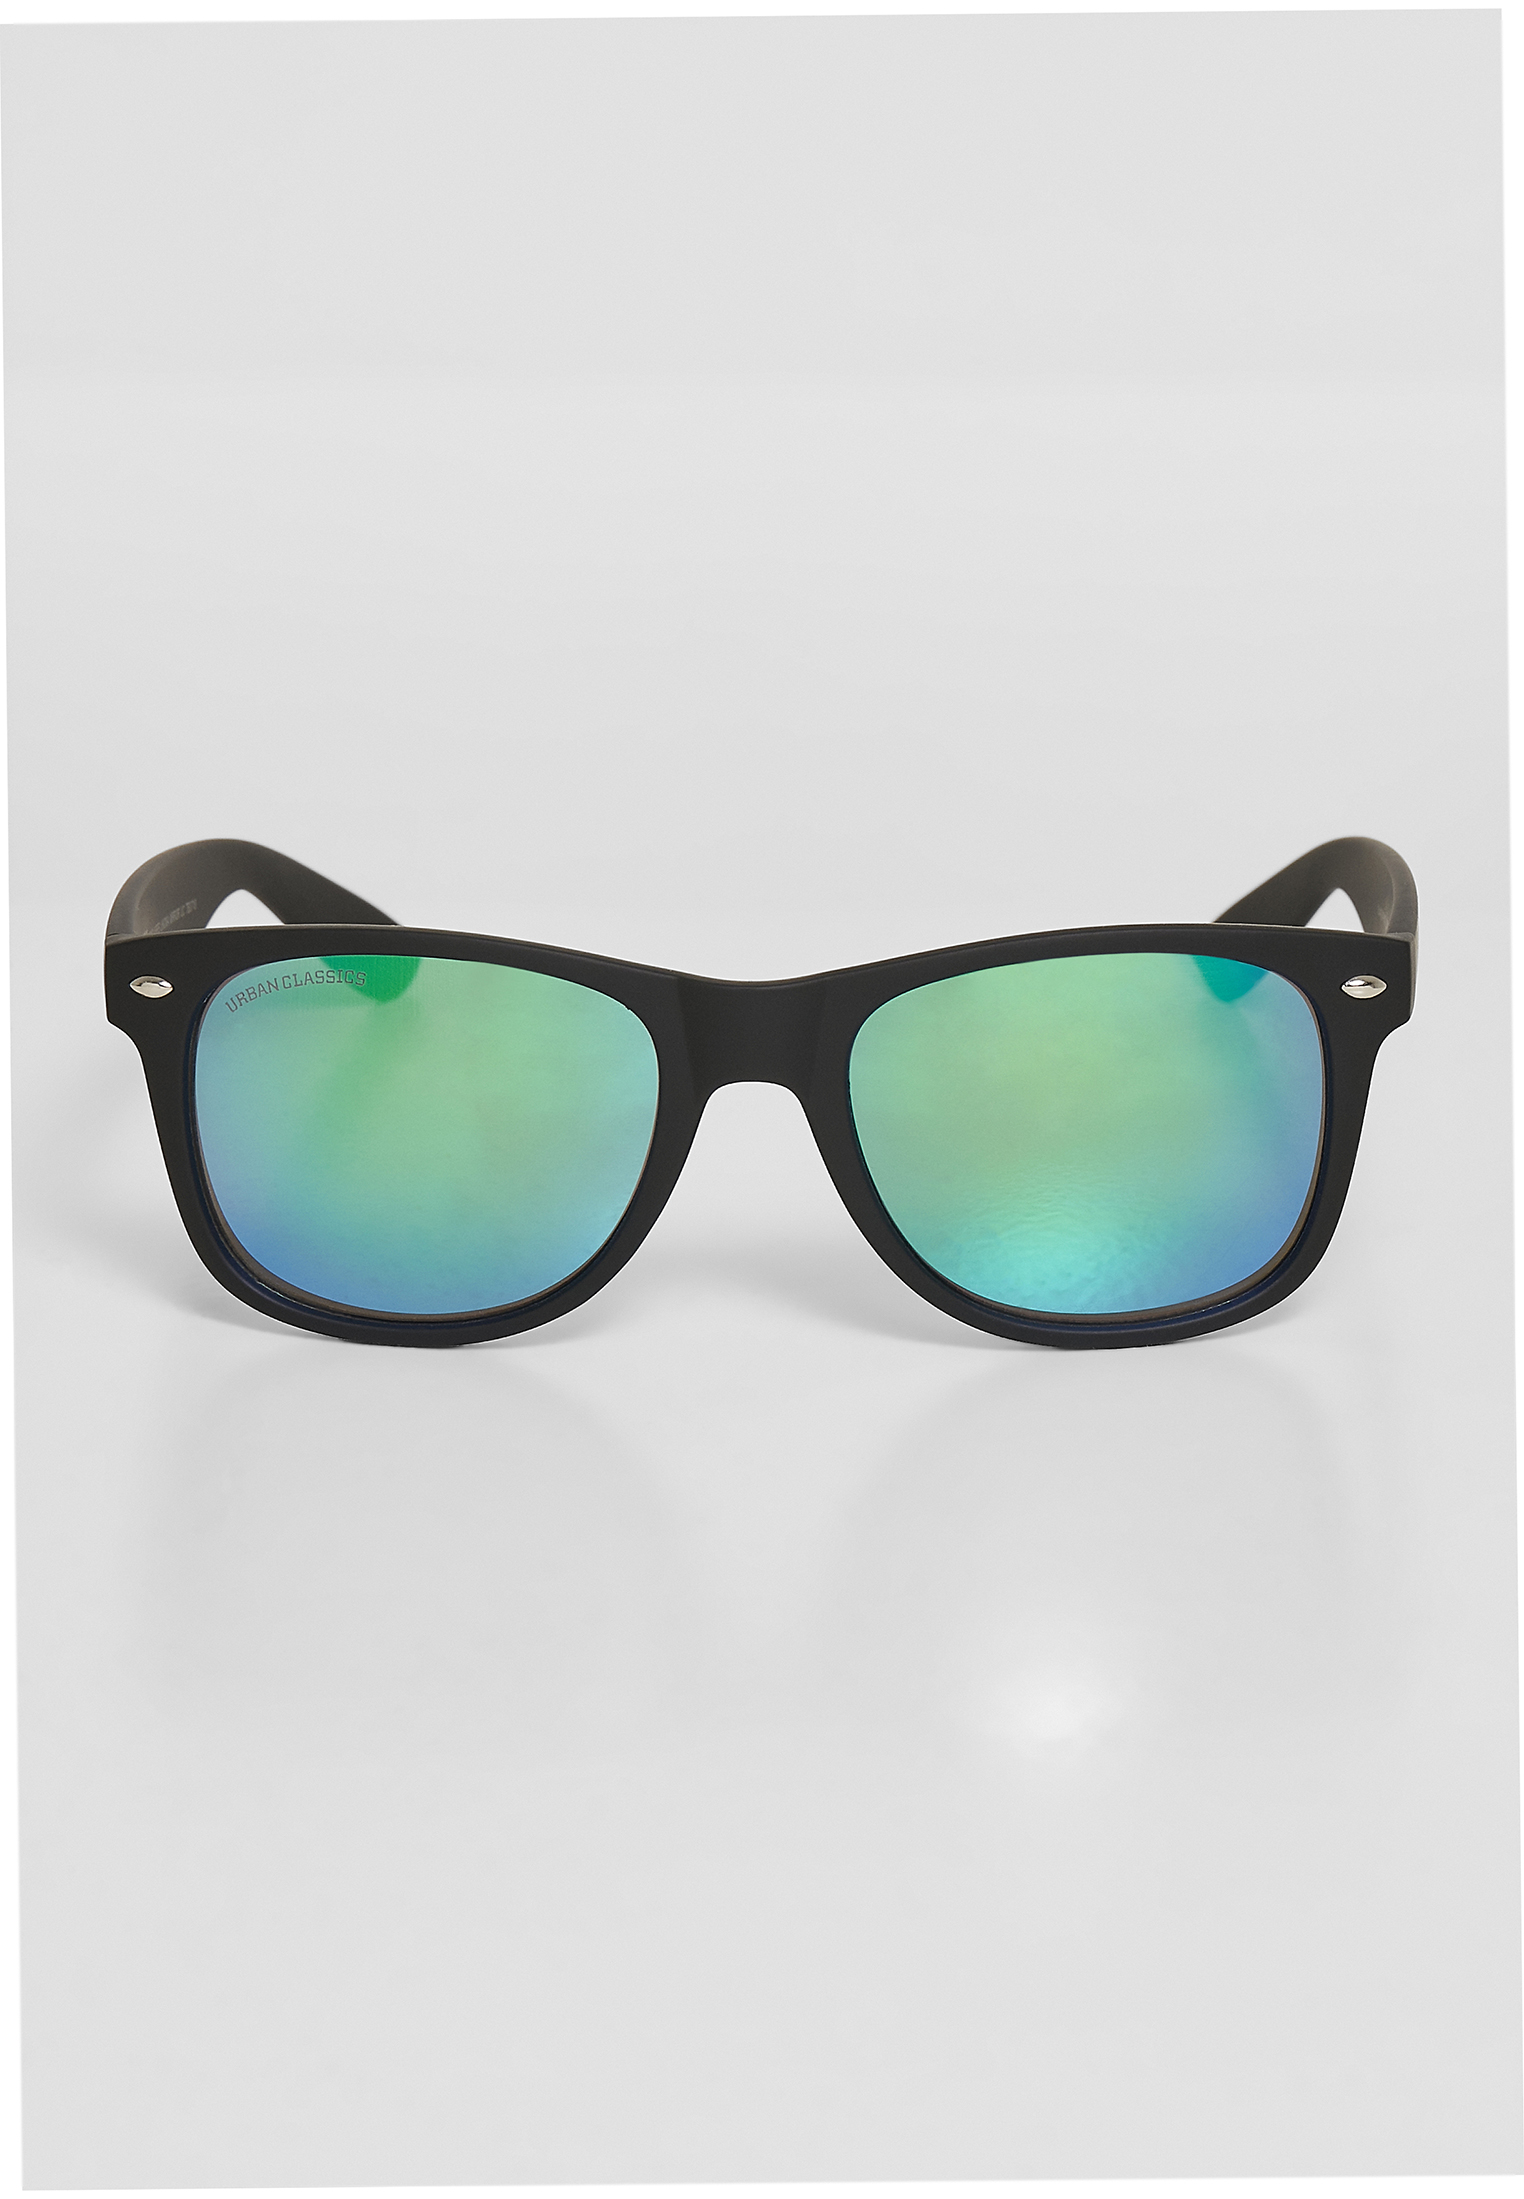 Sonnenbrillen Sunglasses Likoma Mirror UC in Farbe black/green